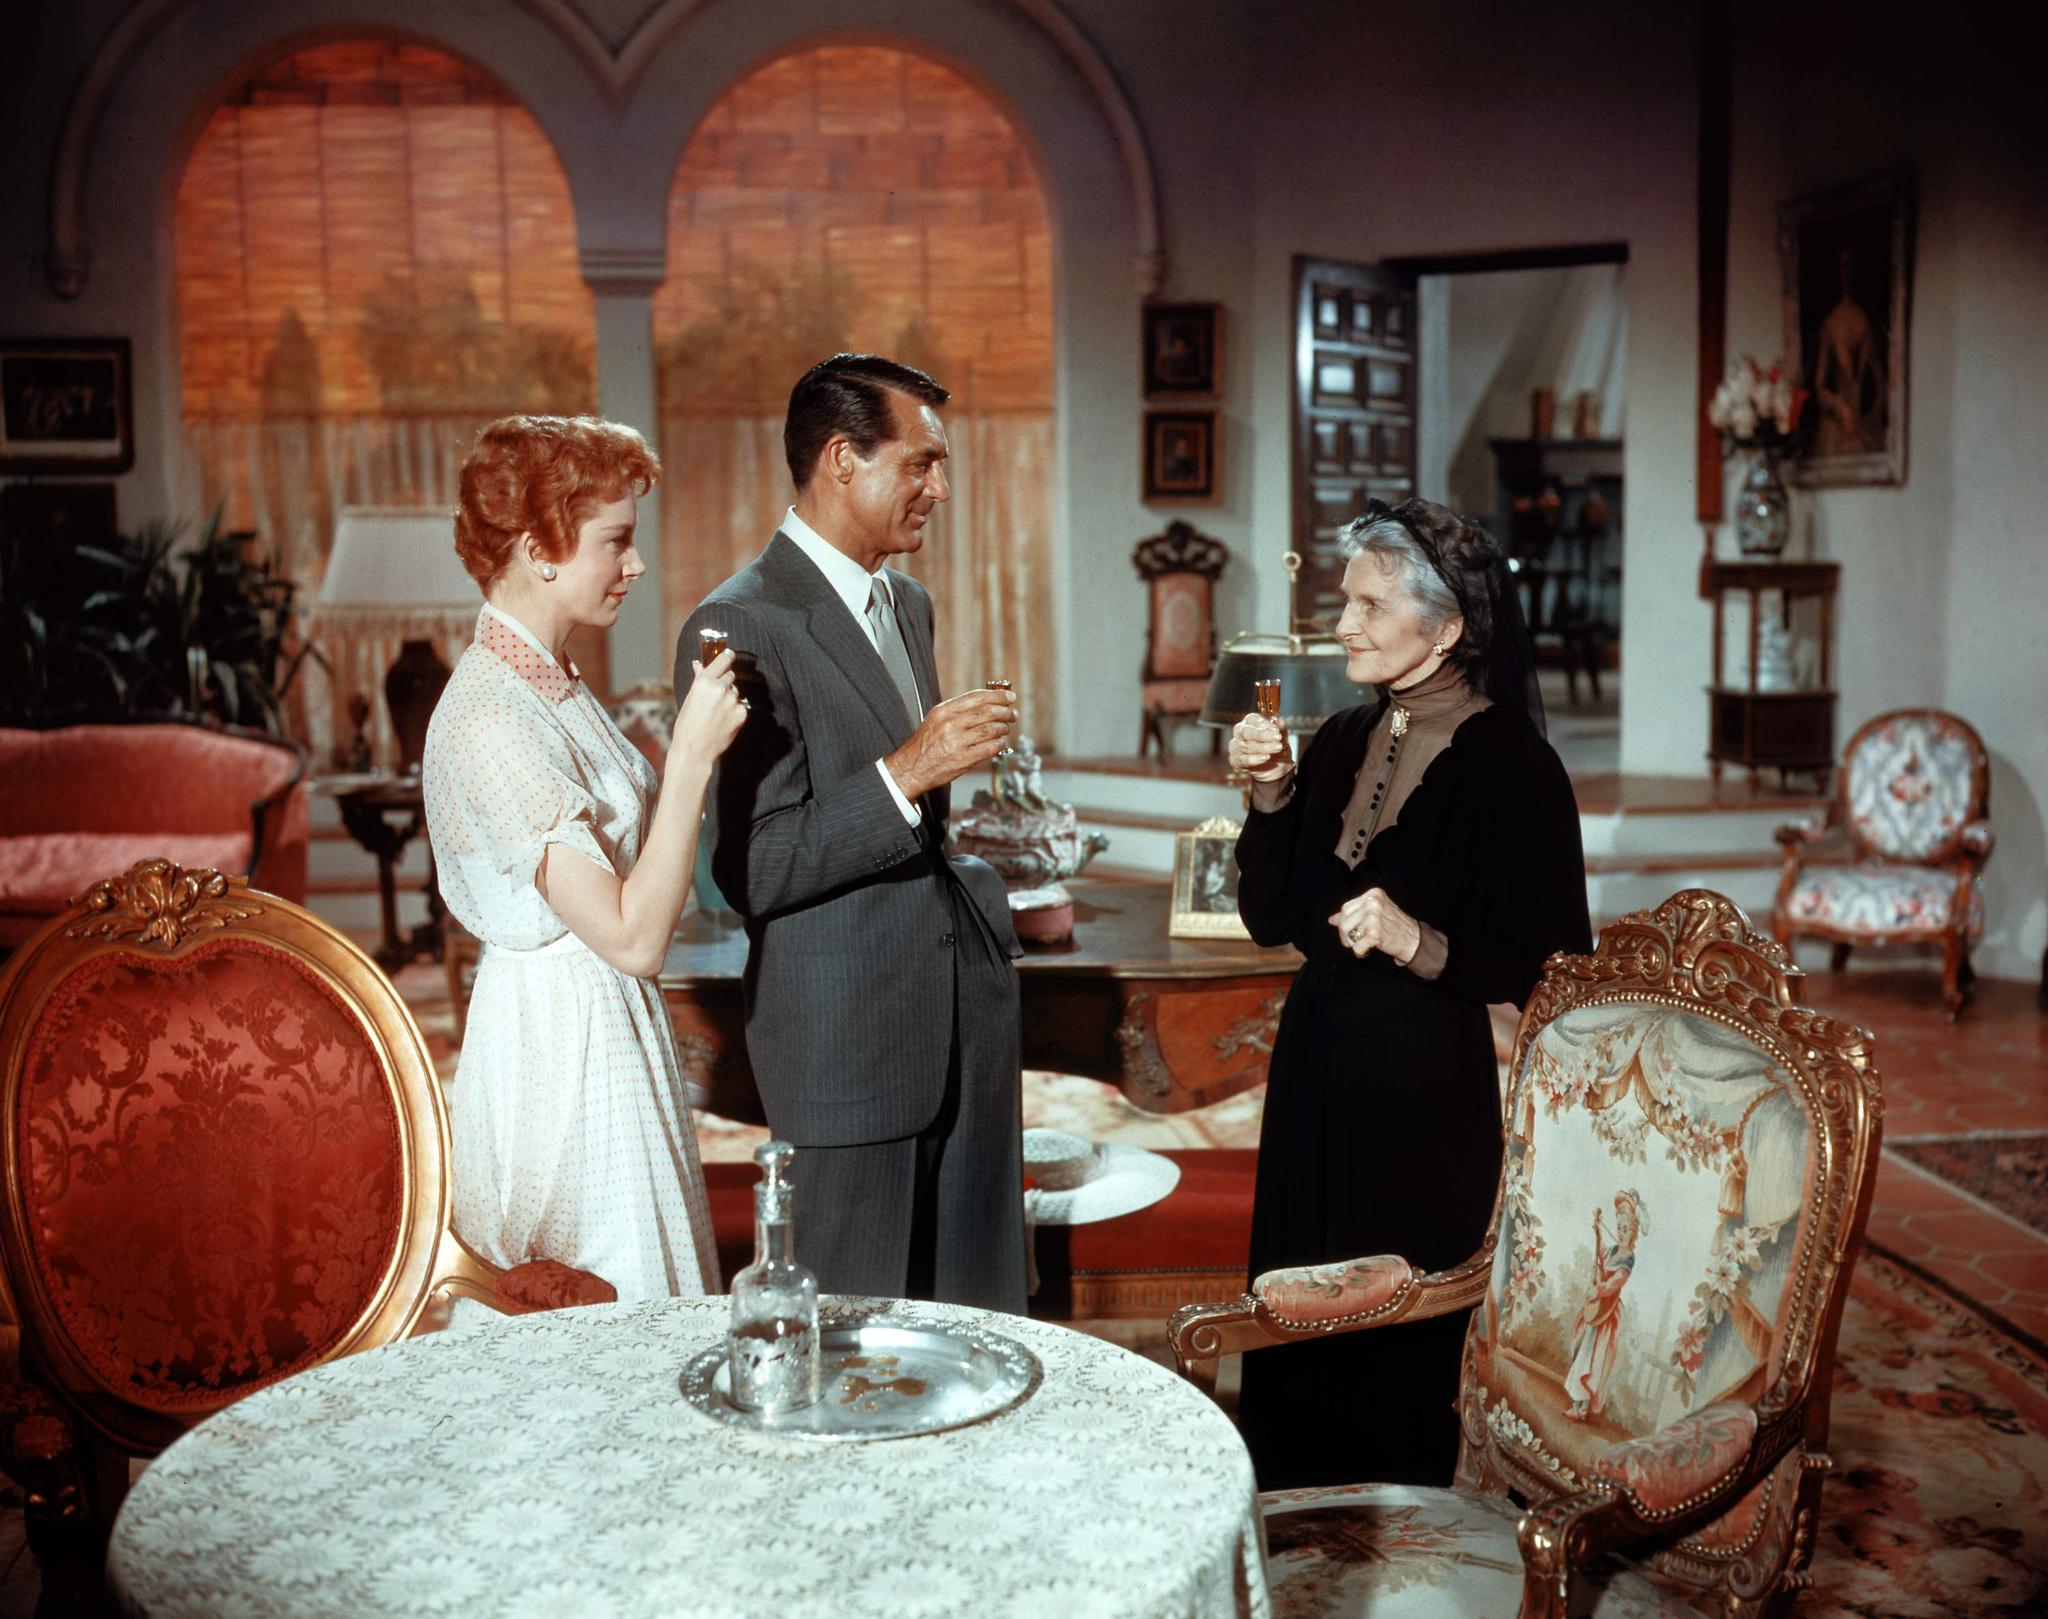 Still of Cary Grant, Deborah Kerr and Cathleen Nesbitt in An Affair to Remember (1957)